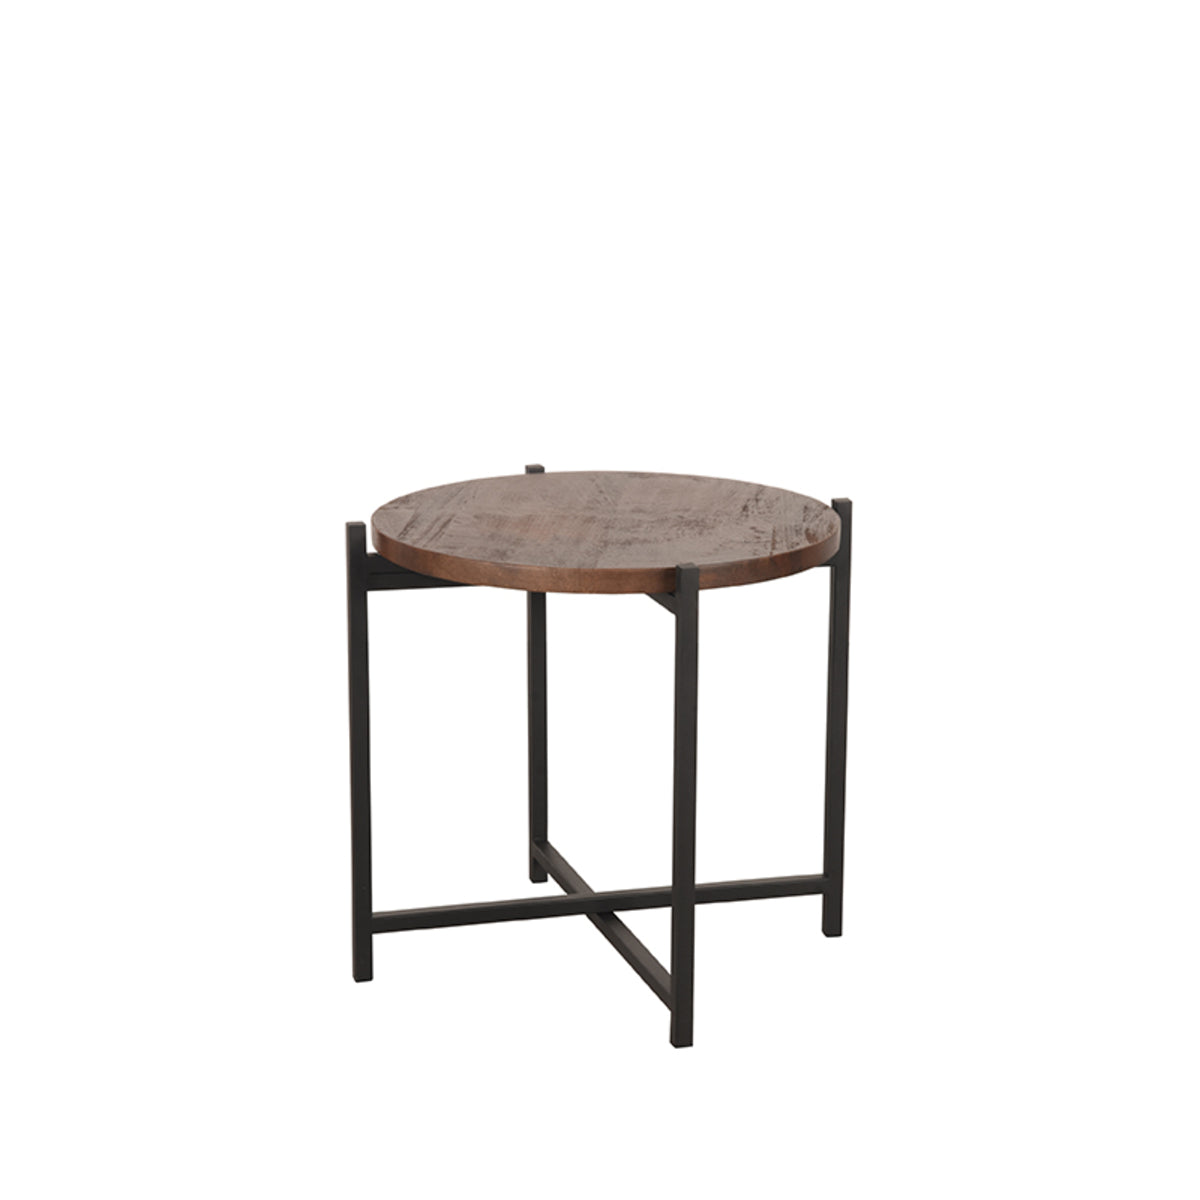 LABEL51 Side table Dox - Espresso - Mango wood - Black